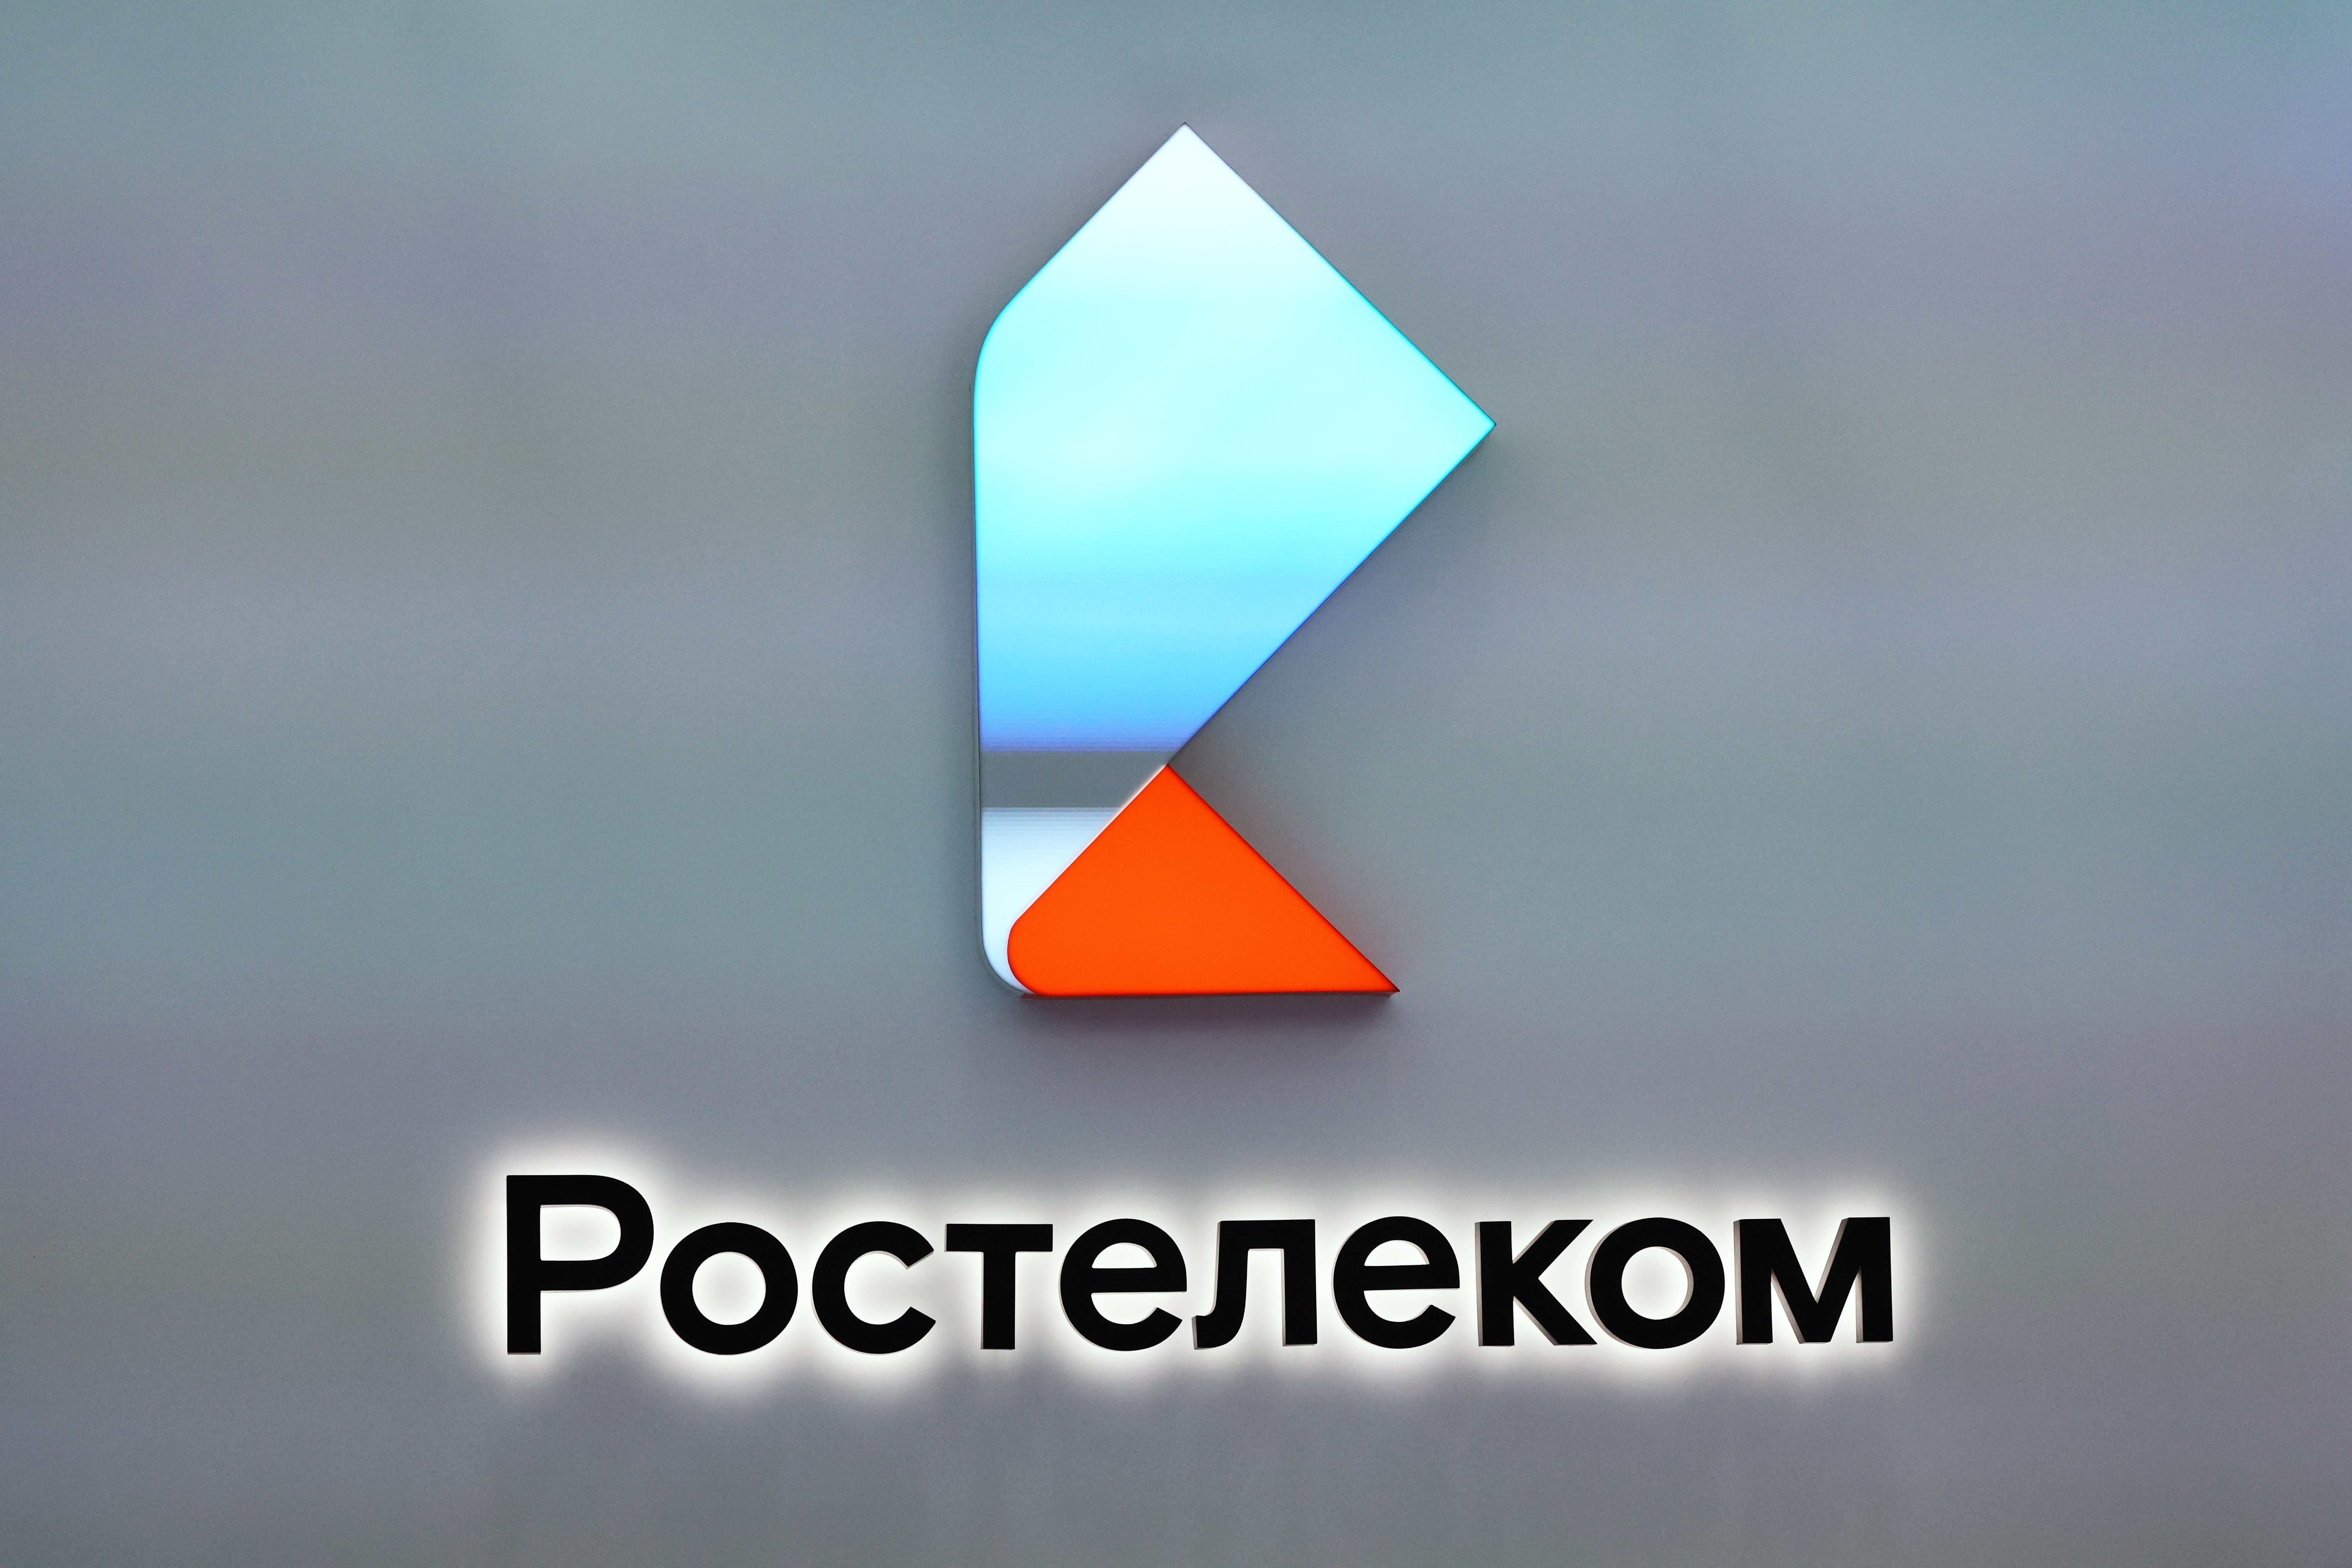 St. Petersburg International Economic Forum (SPIEF)